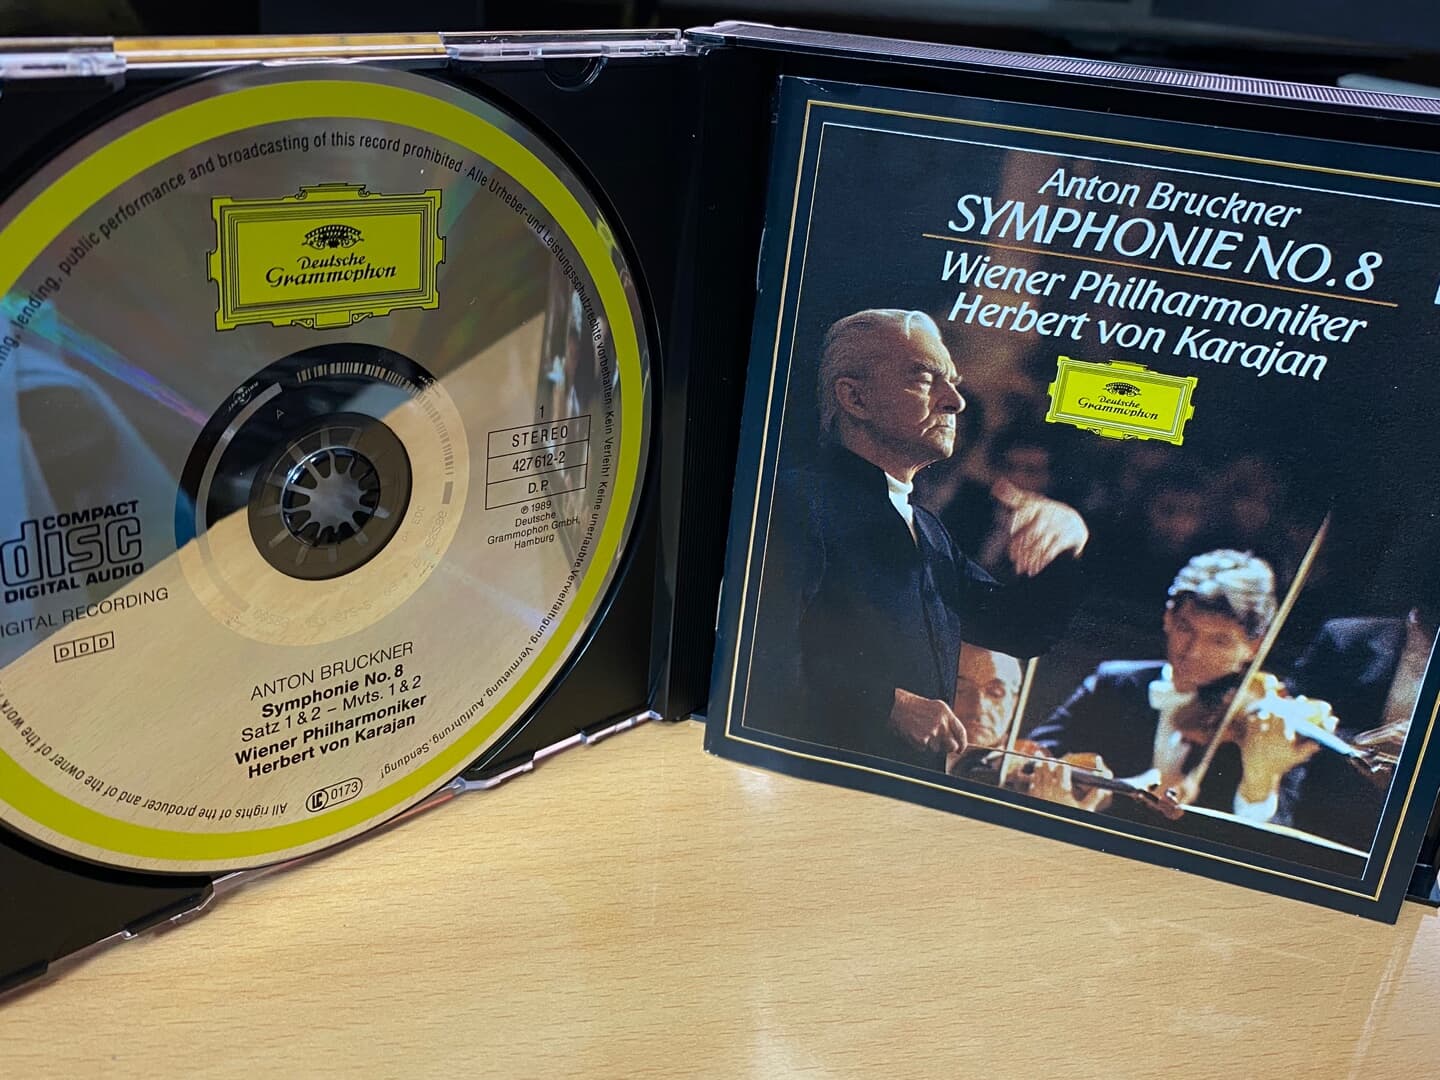 카라얀 - Karajan - Bruckner Symphonie No.8 2Cds [독일발매]